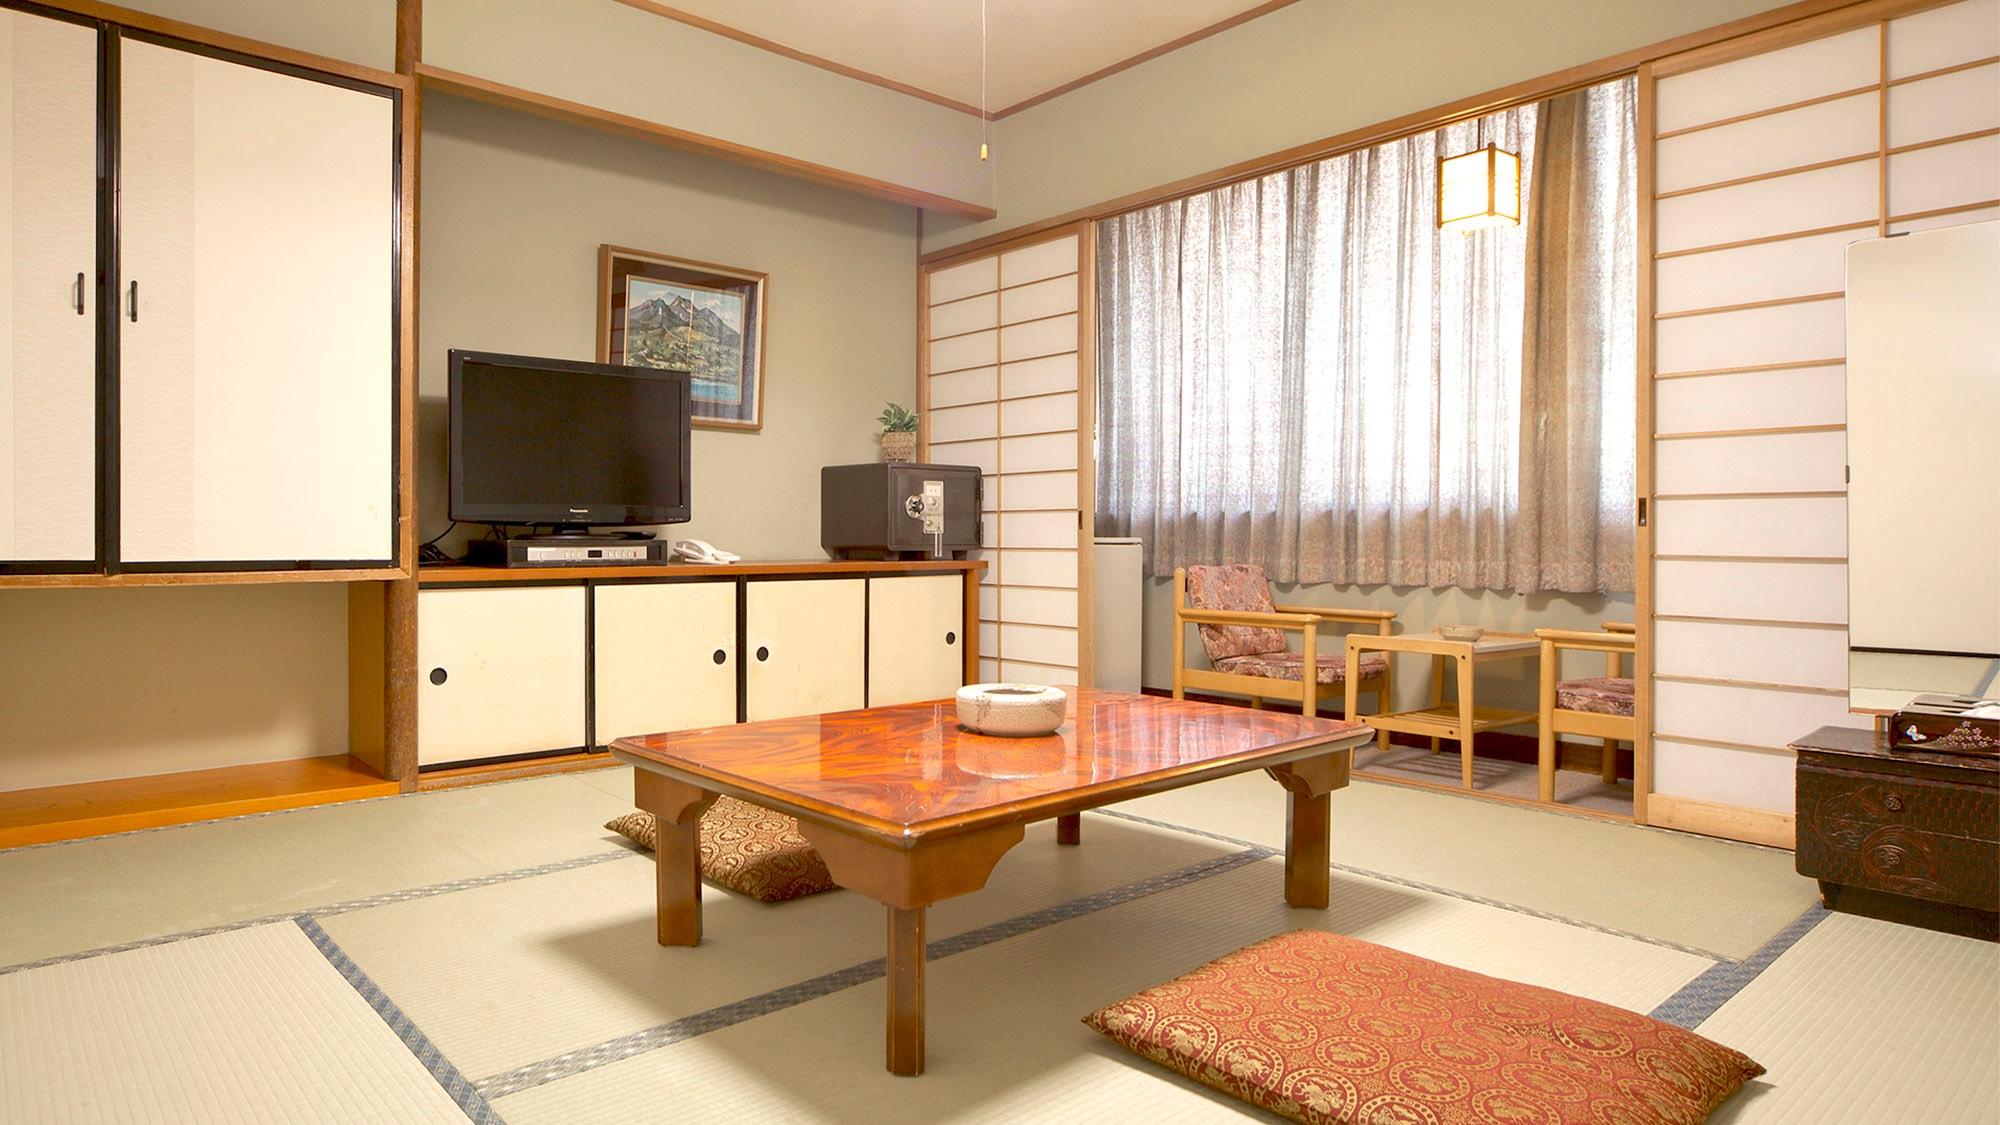 ・ [ตัวอย่างห้องพักแขก] ห้องเสื่อทาทามิที่ให้ความสำคัญกับสไตล์ญี่ปุ่นแท้ๆ